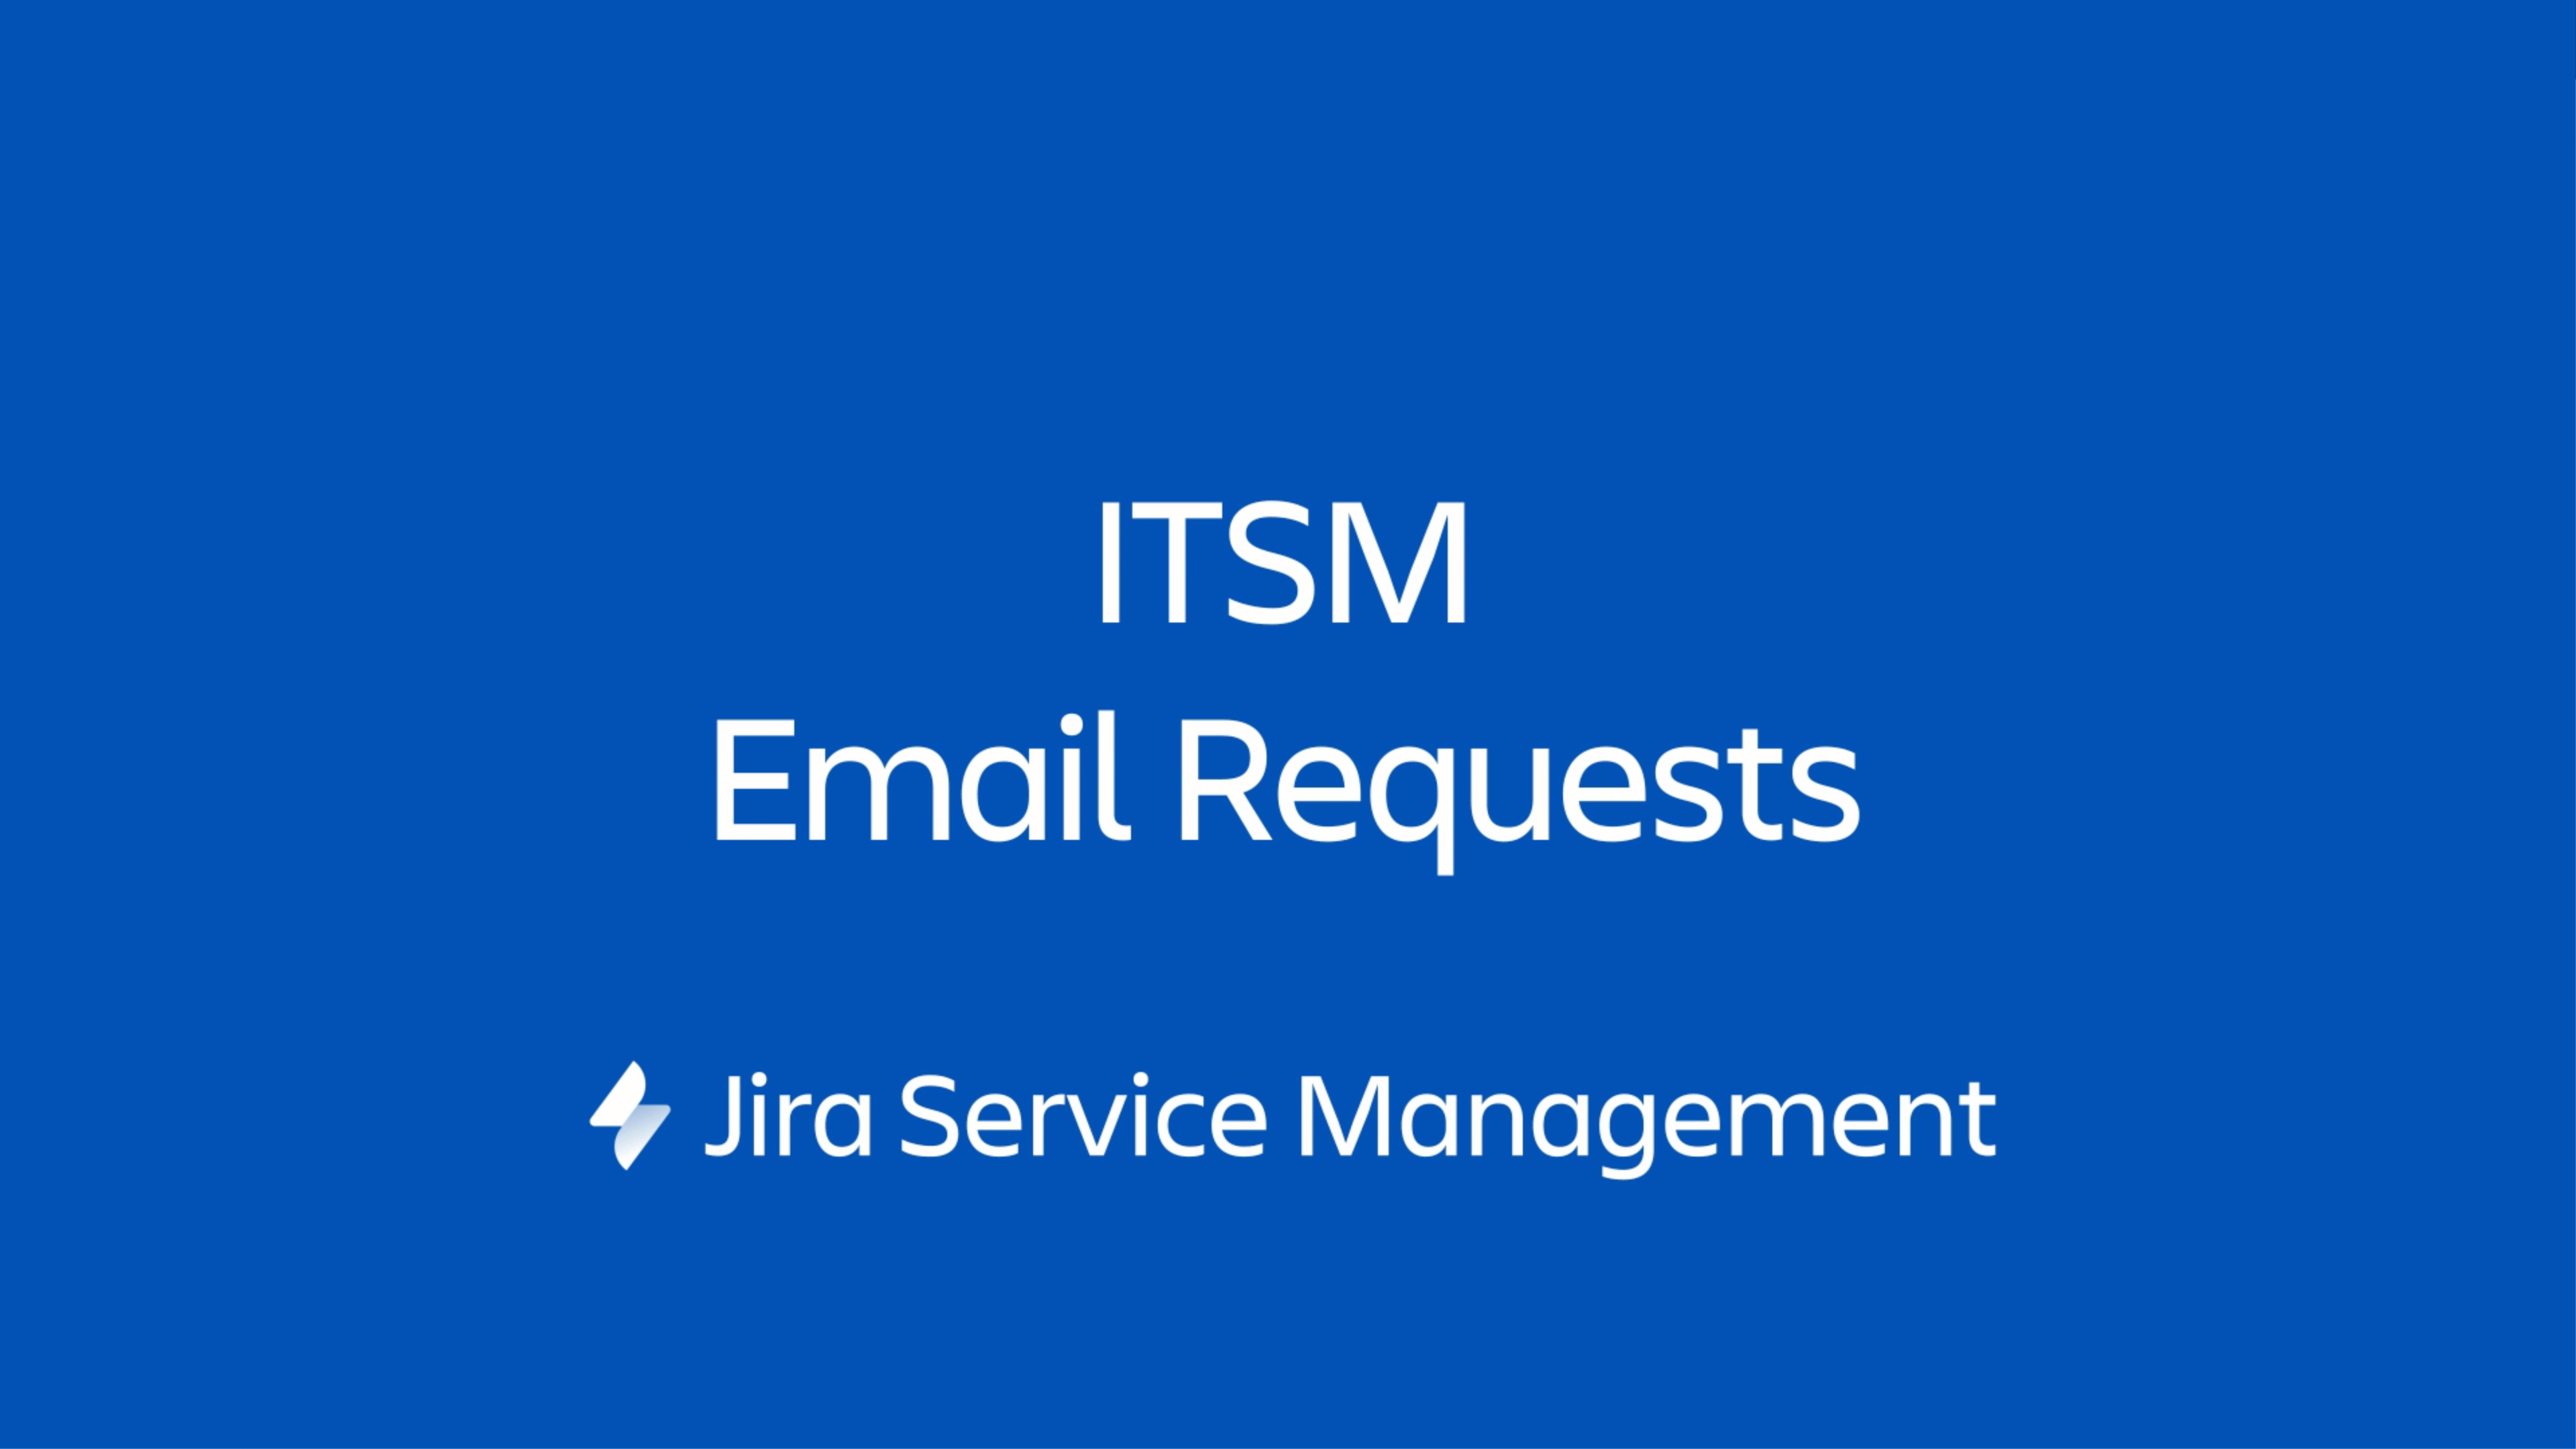 Solicitudes por correo electrónico de ITSM en Jira Service Management